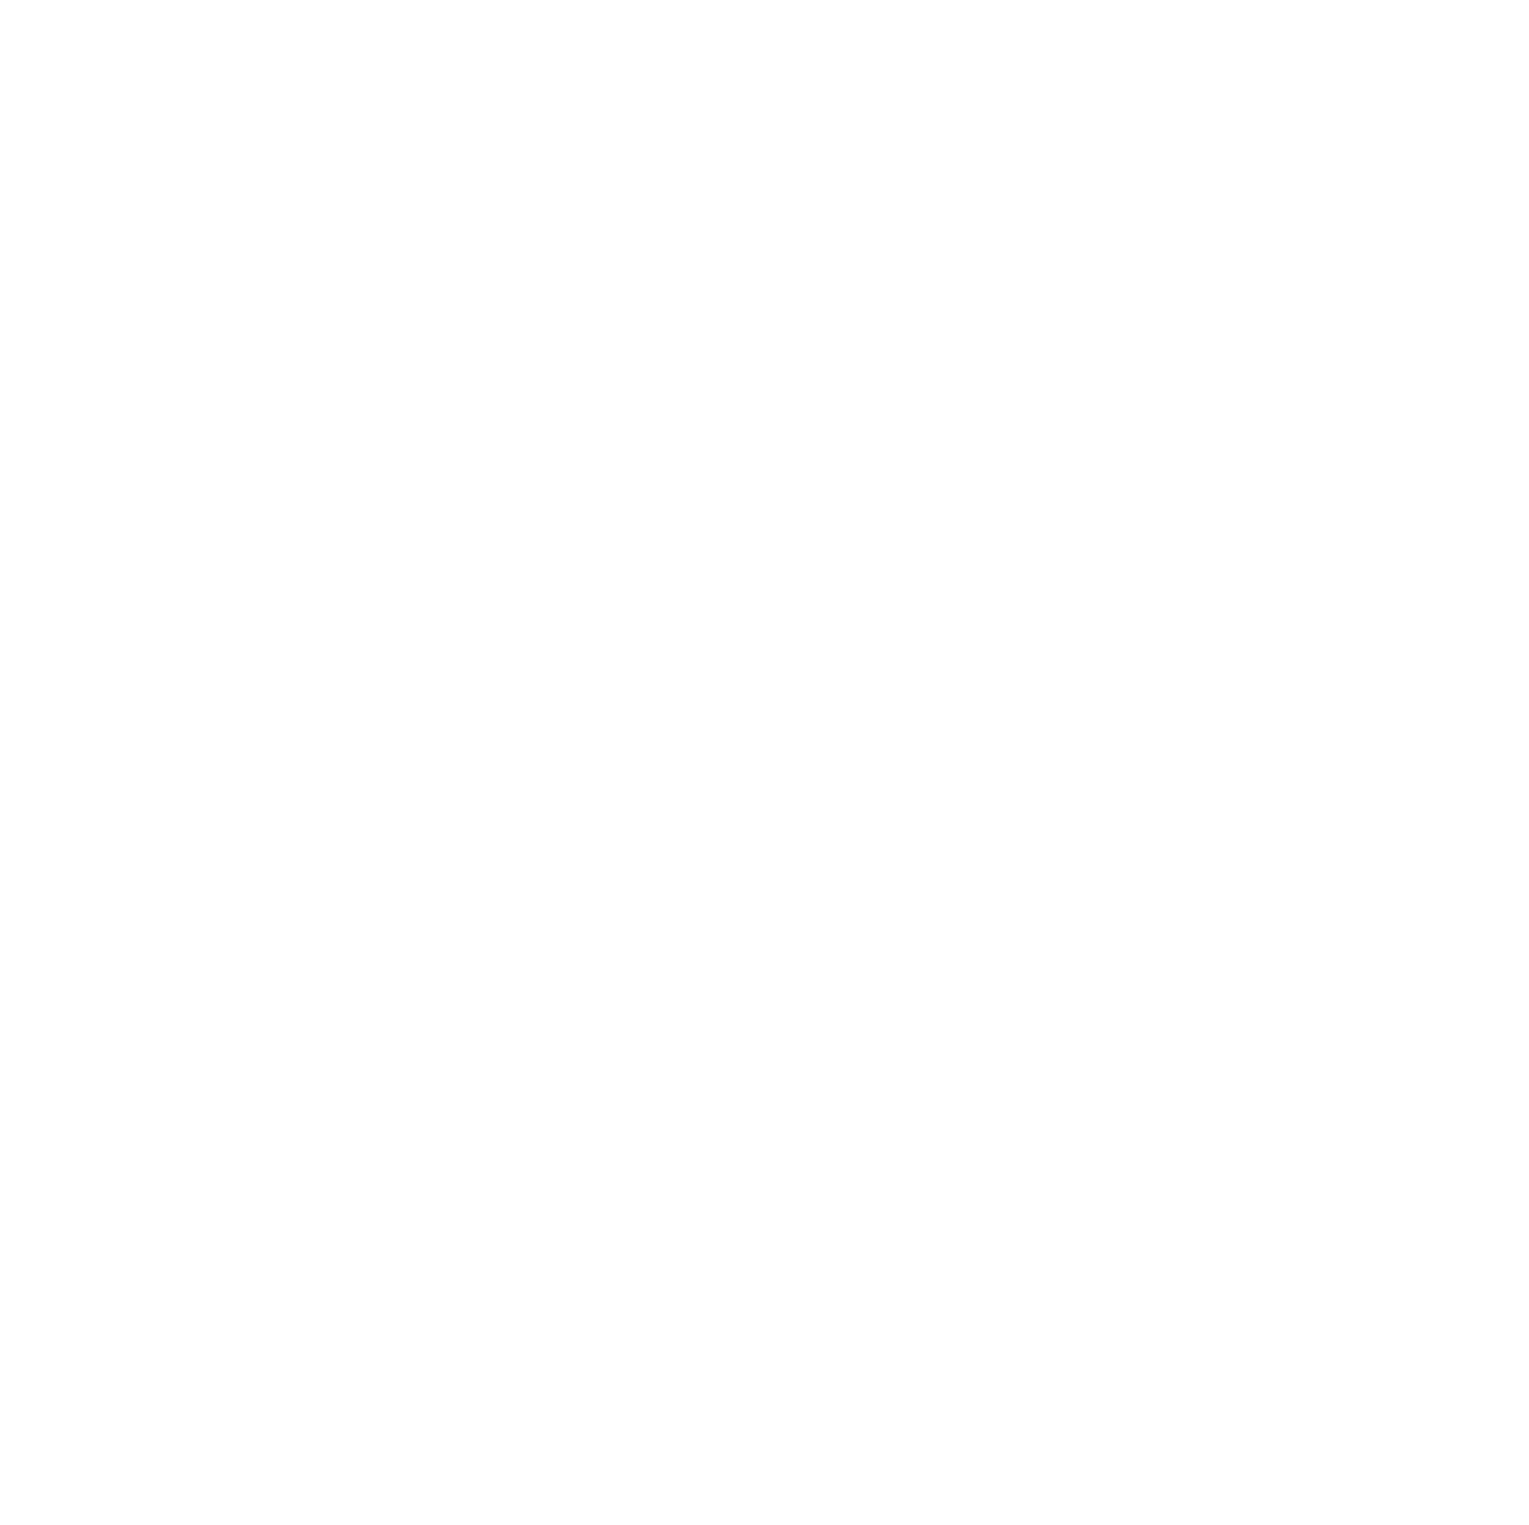 Greencoat UK Wind logo pour fonds sombres (PNG transparent)